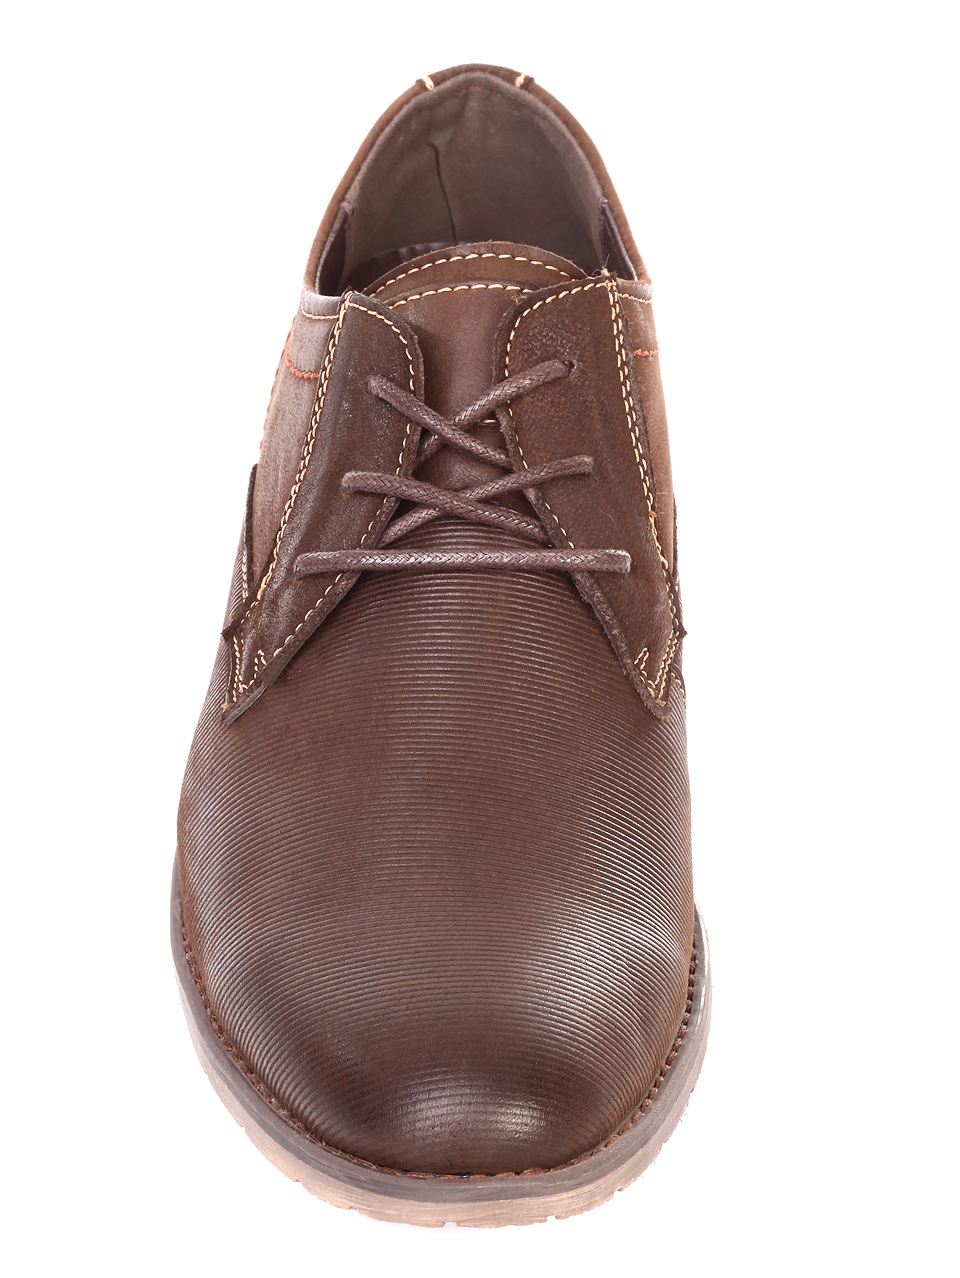 Елегантни мъжки обувки от естествен набук 7N-18728 brown